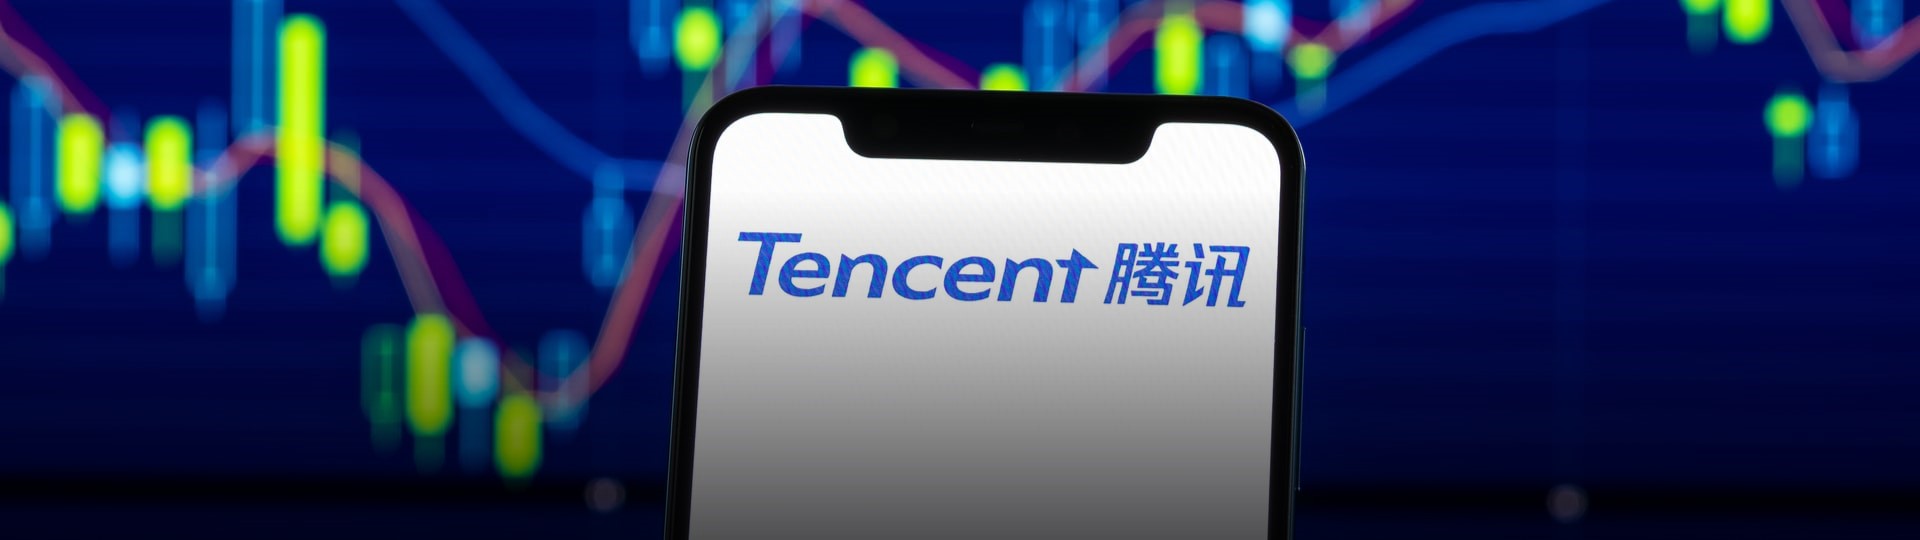 Tencent Music koupí vlastní akcie za jednu miliardu dolarů